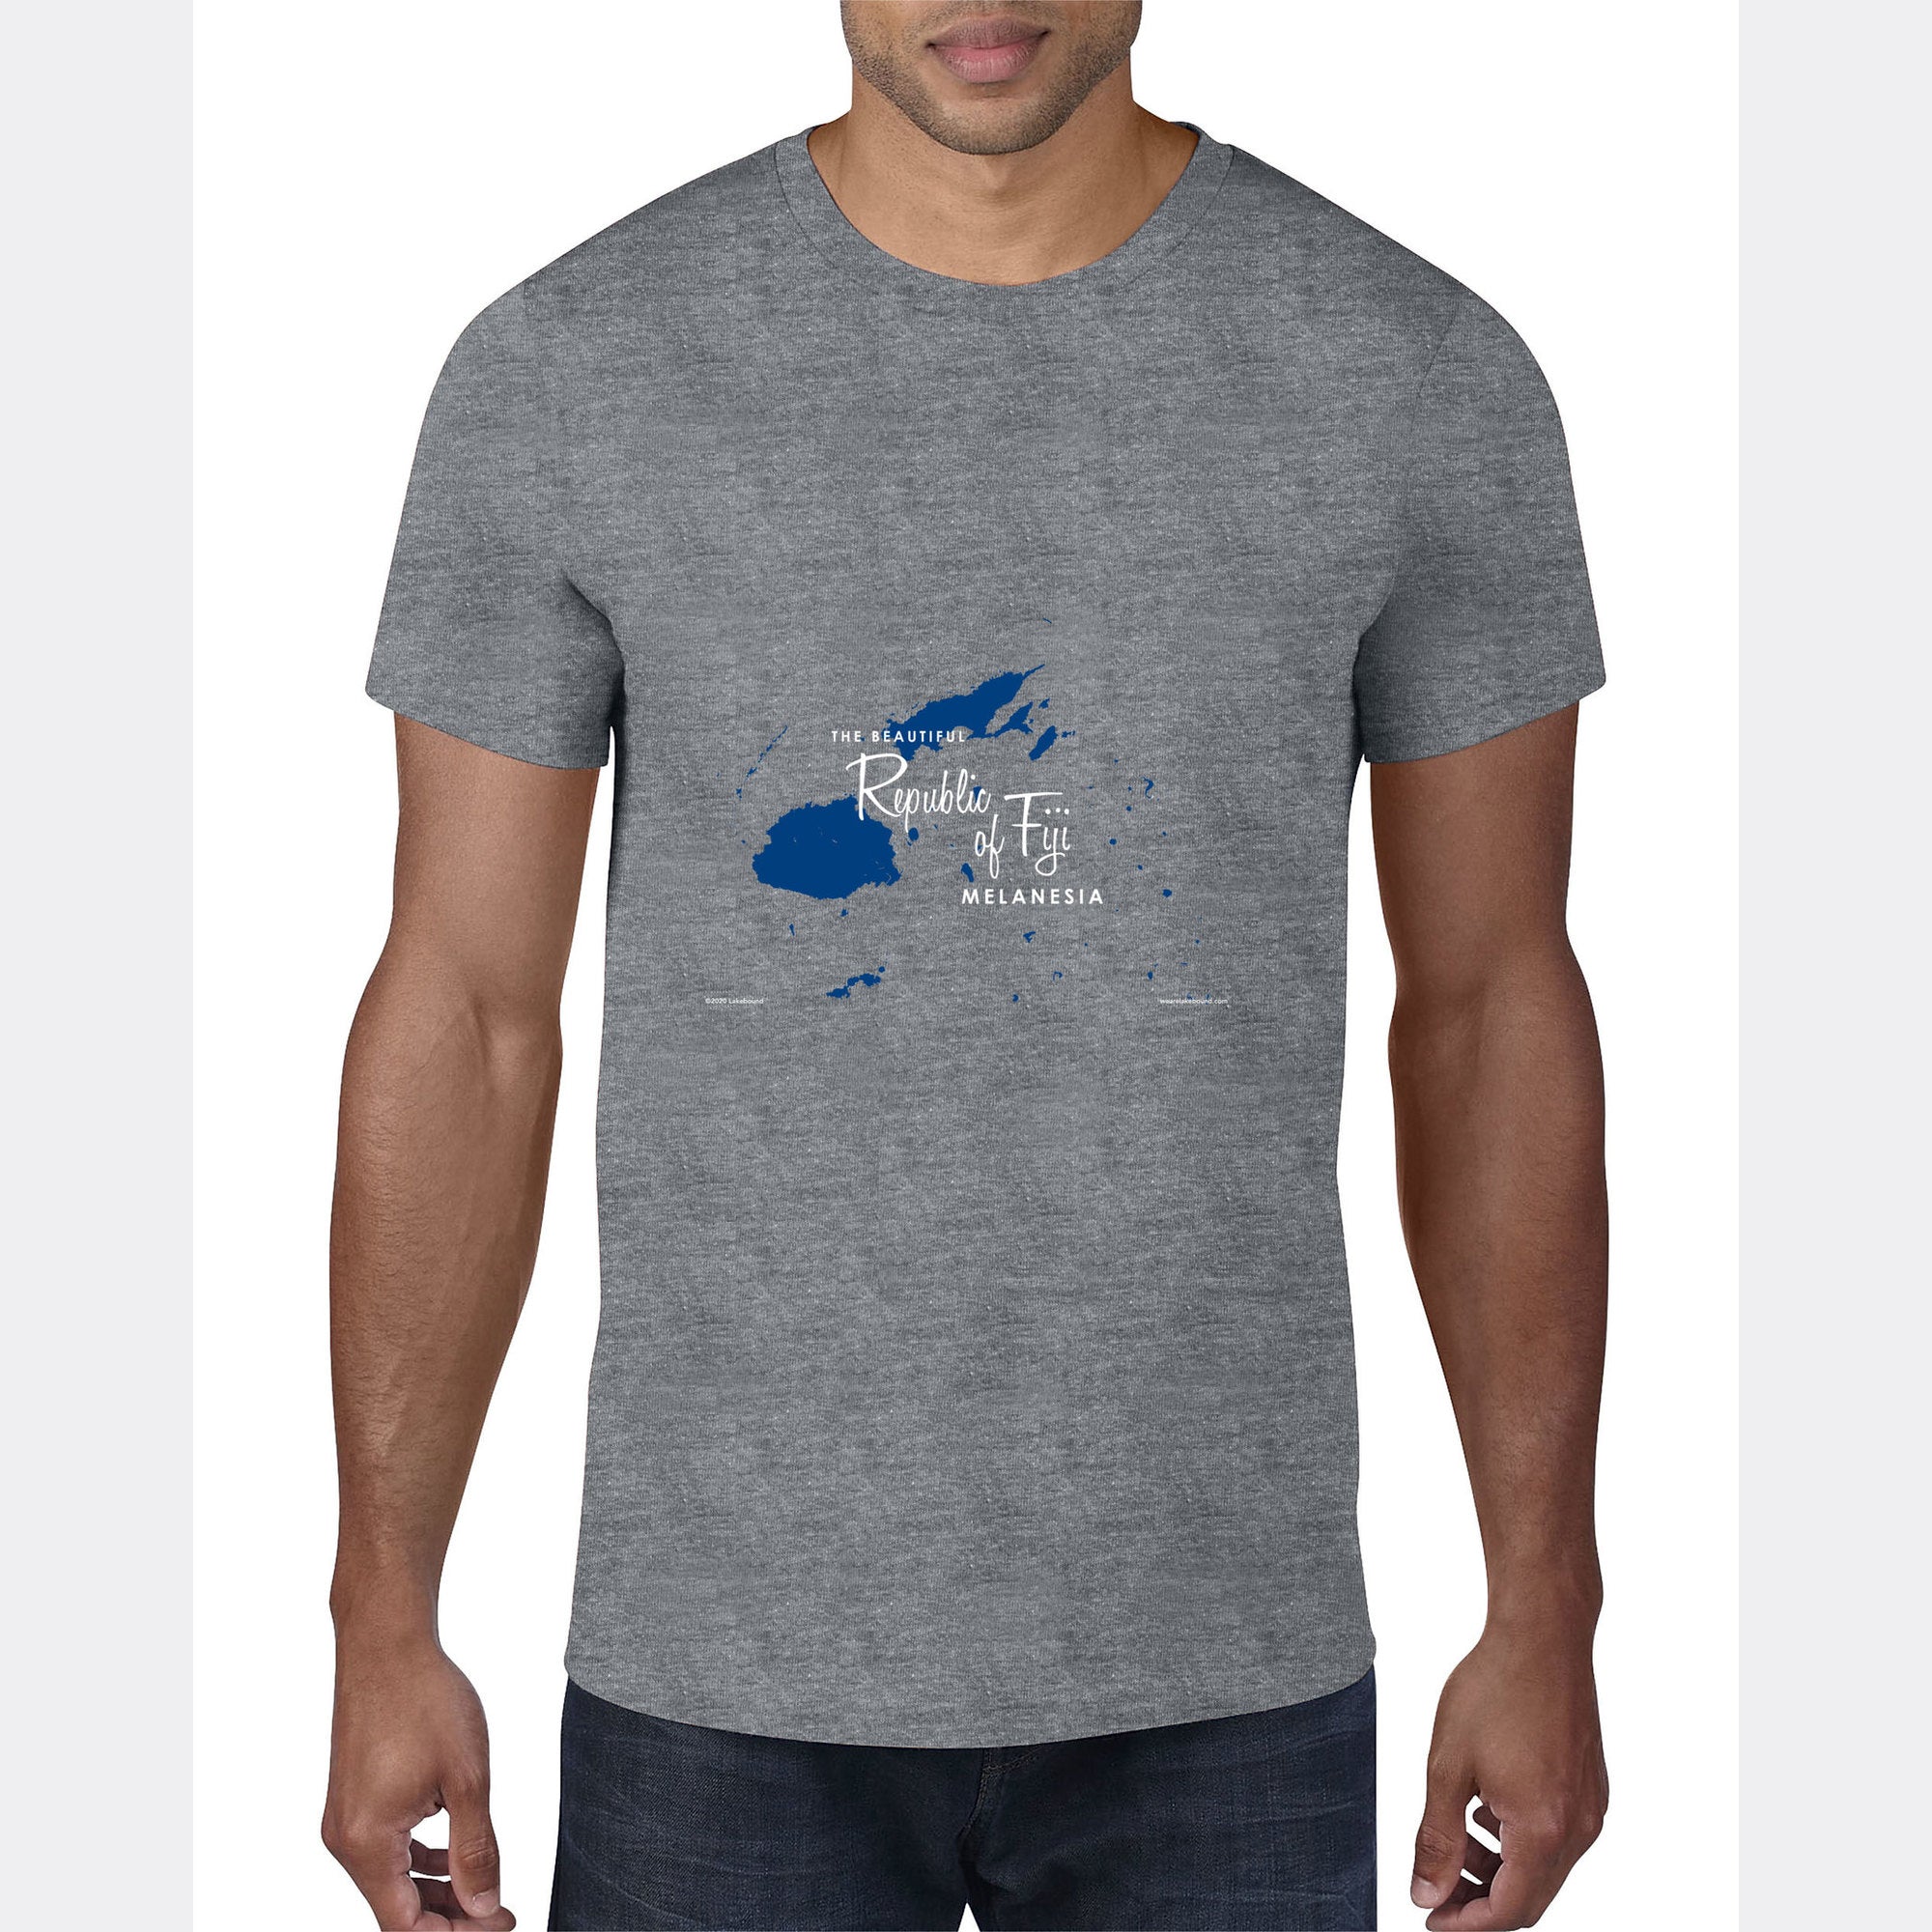 Republic of Fiji Melanesia, T-Shirt